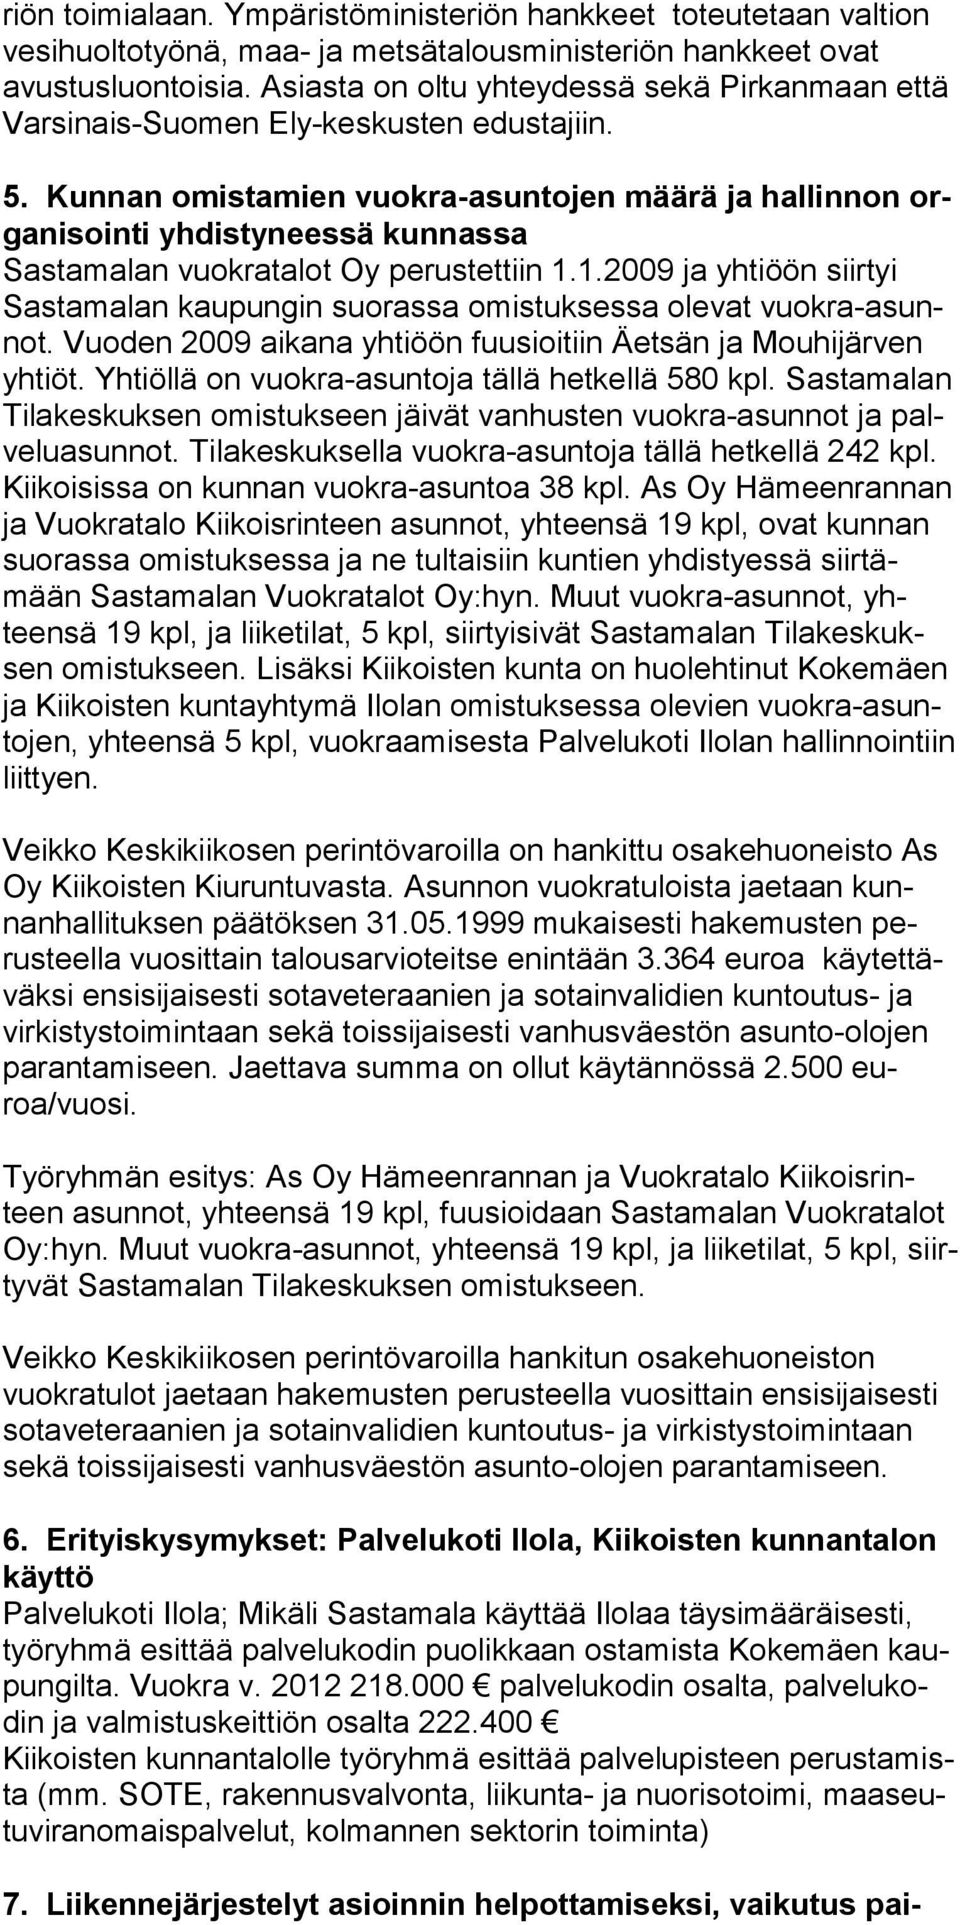 Kunnan omistamien vuokra-asuntojen määrä ja hallinnon organi sointi yhdistyneessä kunnassa Sastamalan vuokratalot Oy perustettiin 1.